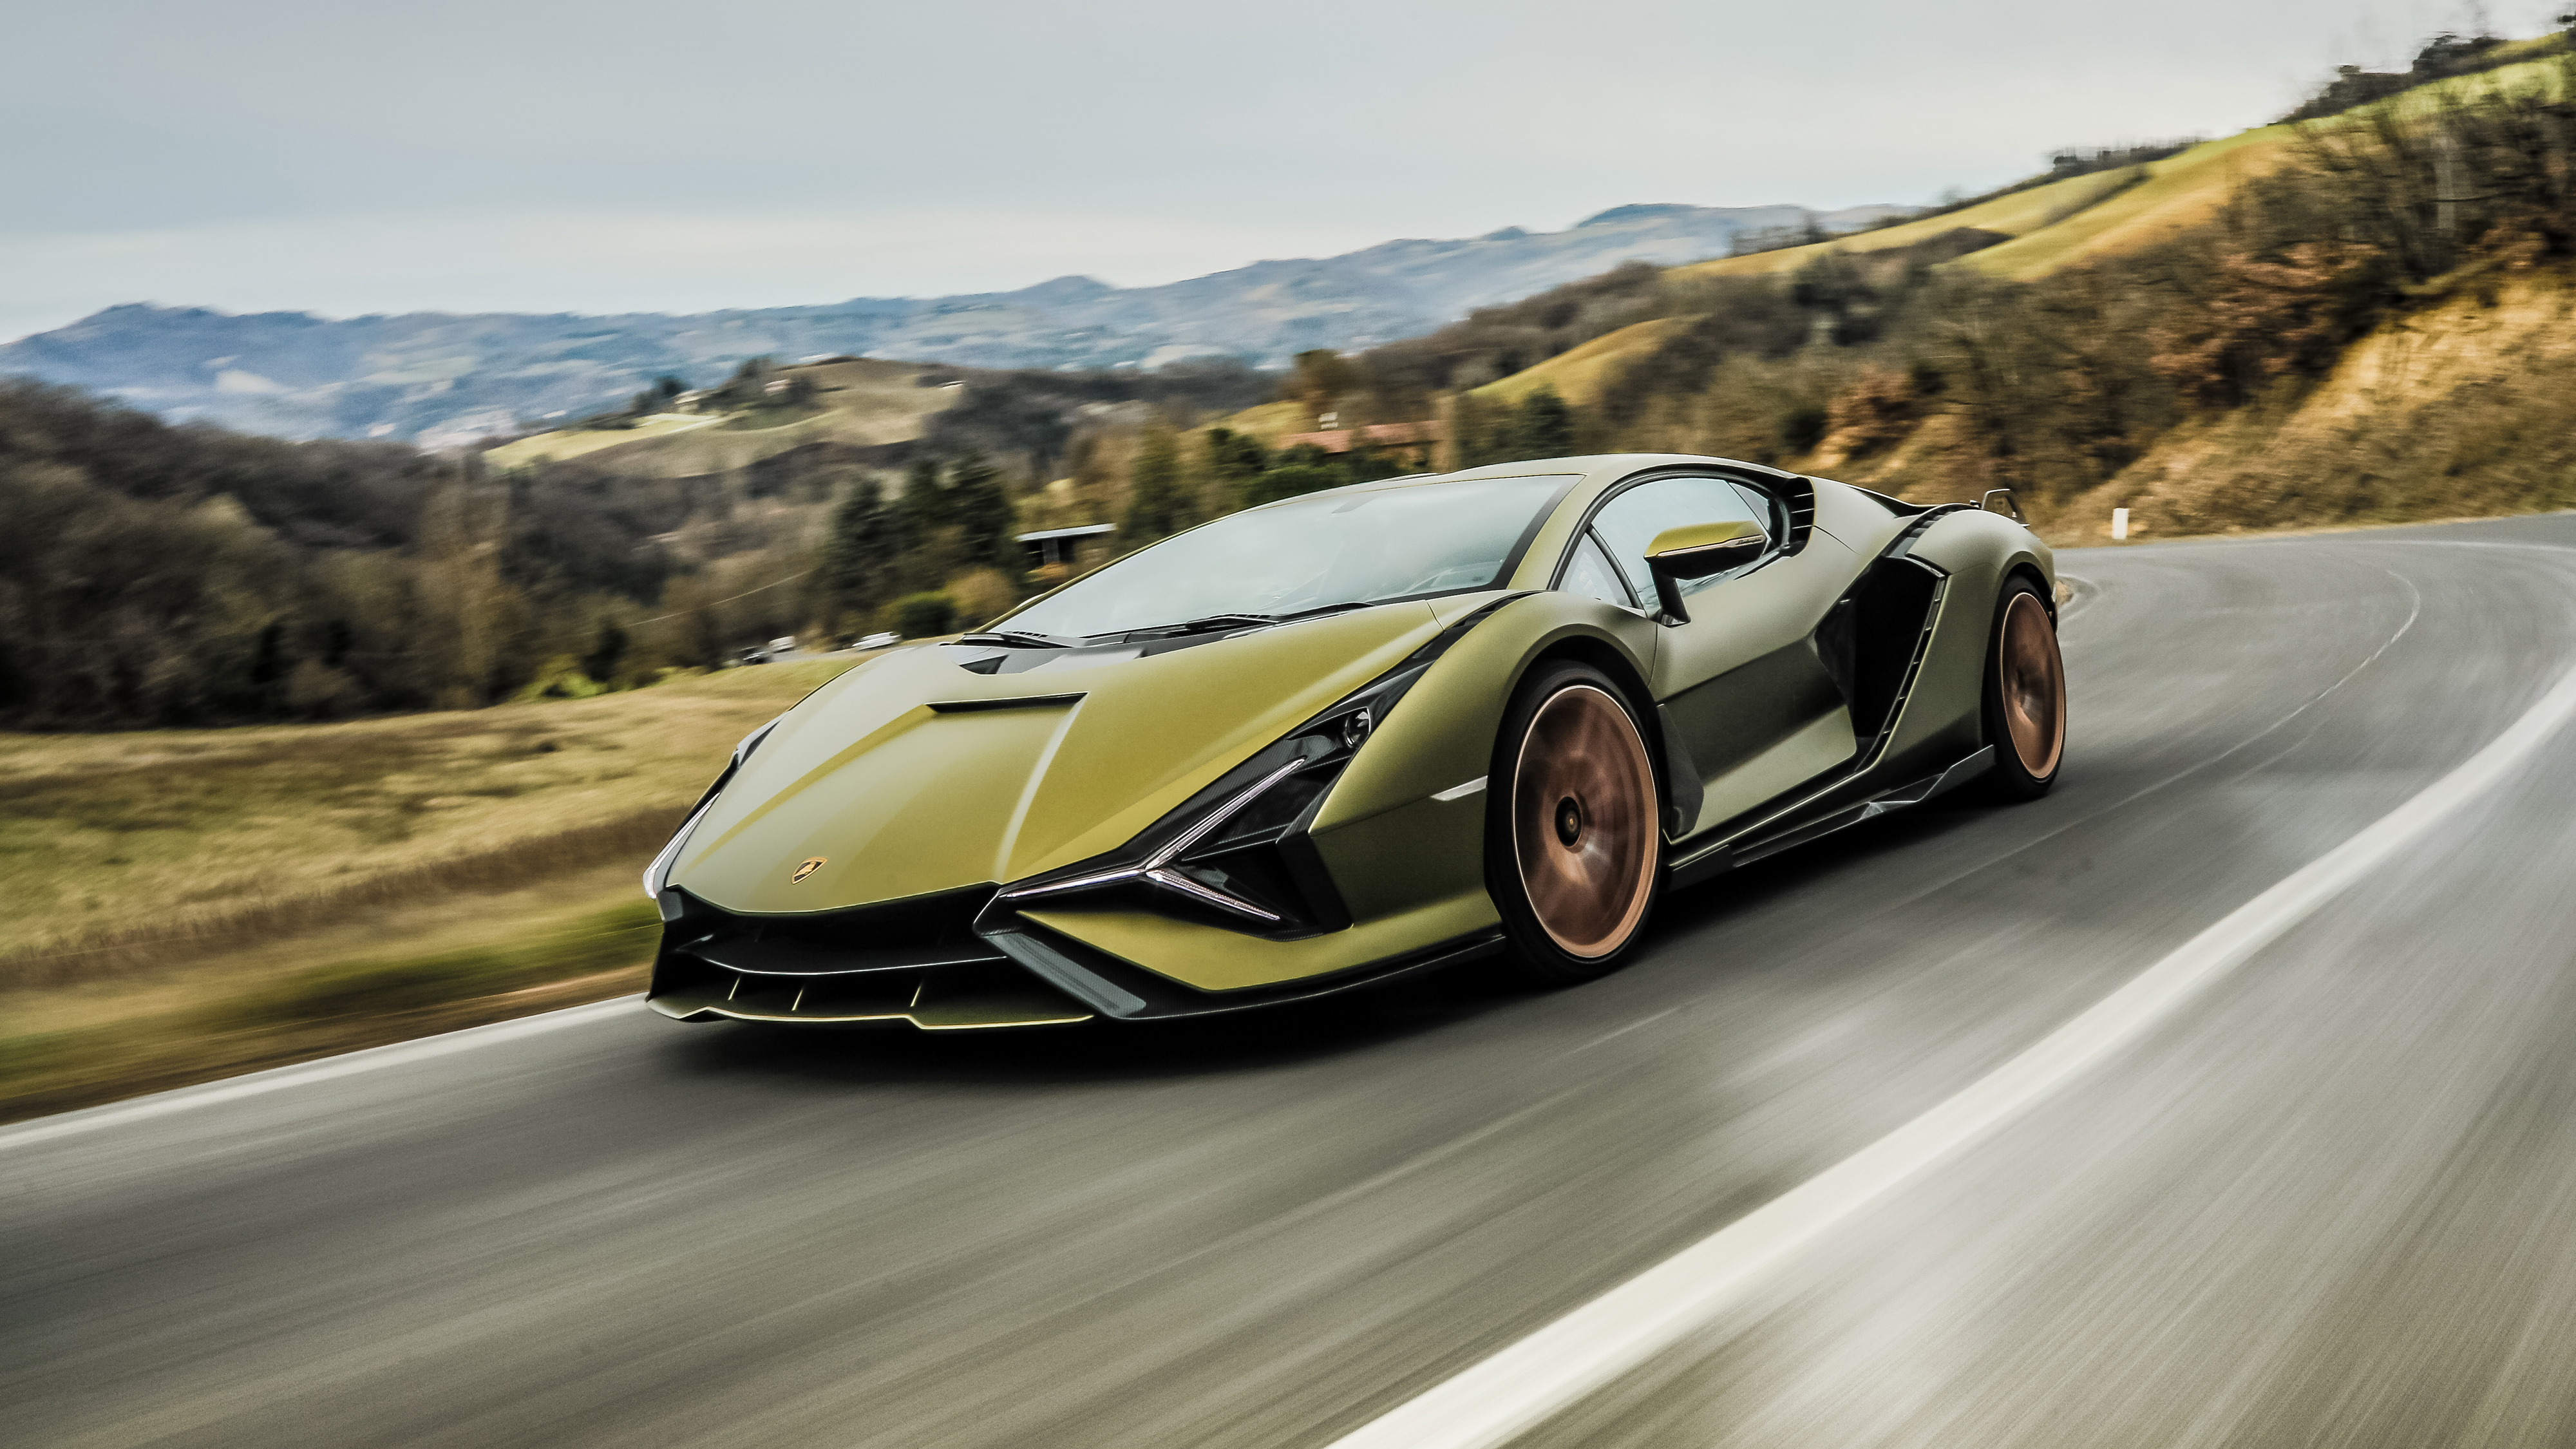 Siêu xe Lamborghini Sián FKP 37 là một thiết kế độc đáo, kết hợp công nghệ tiên tiến và kiểu dáng đẹp mắt. Với khối động cơ Hybrid V12 có công suất tối đa 819 mã lực, nó có thể đạt tốc độ cao và có thể đi từ 0 đến 100 km/h chỉ trong 2,8 giây. Bạn sẽ không muốn bỏ lỡ cơ hội để nhìn thấy chiếc siêu xe này.